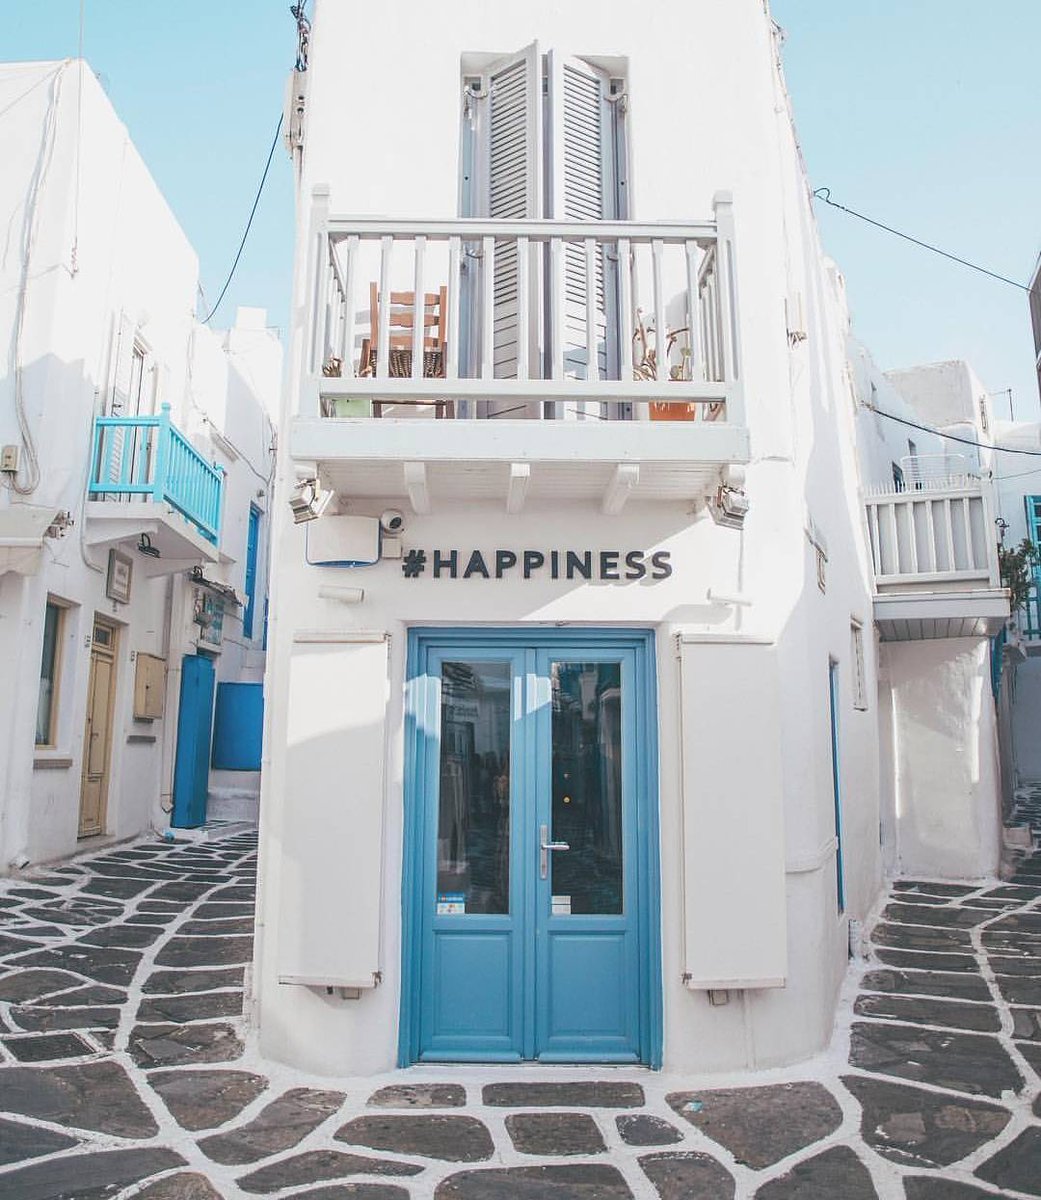 君に見せたい景色 白と水色の街並み ミコノス島 Place ギリシャ